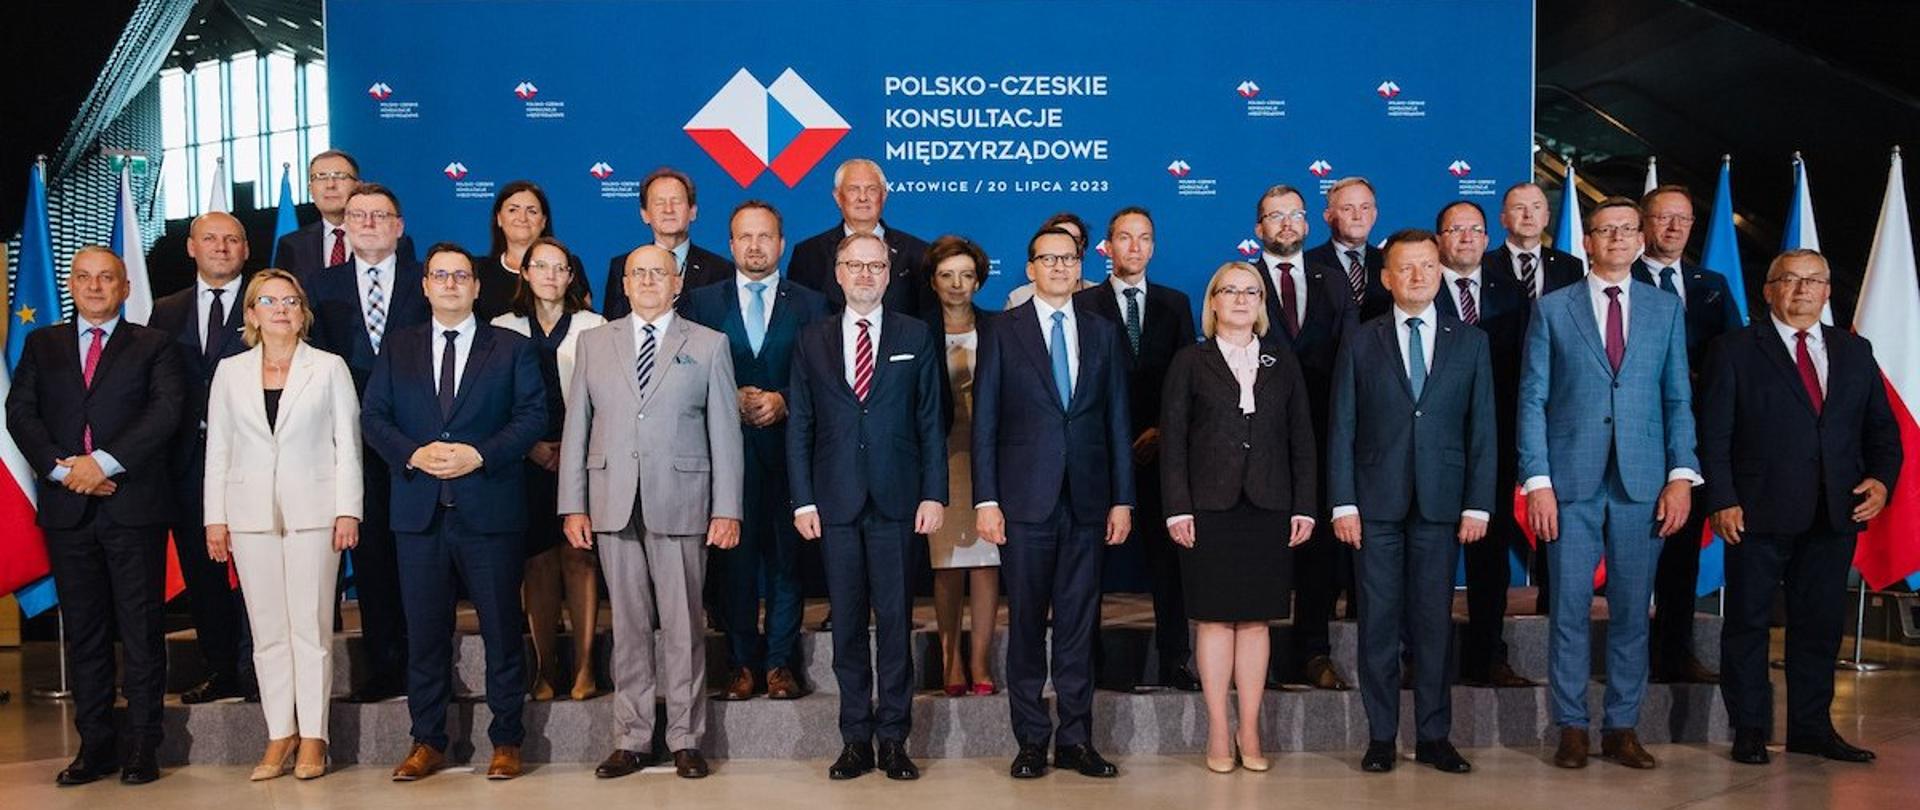 Polsko-czeskie konsultacje międzyrządowe w Katowicach 